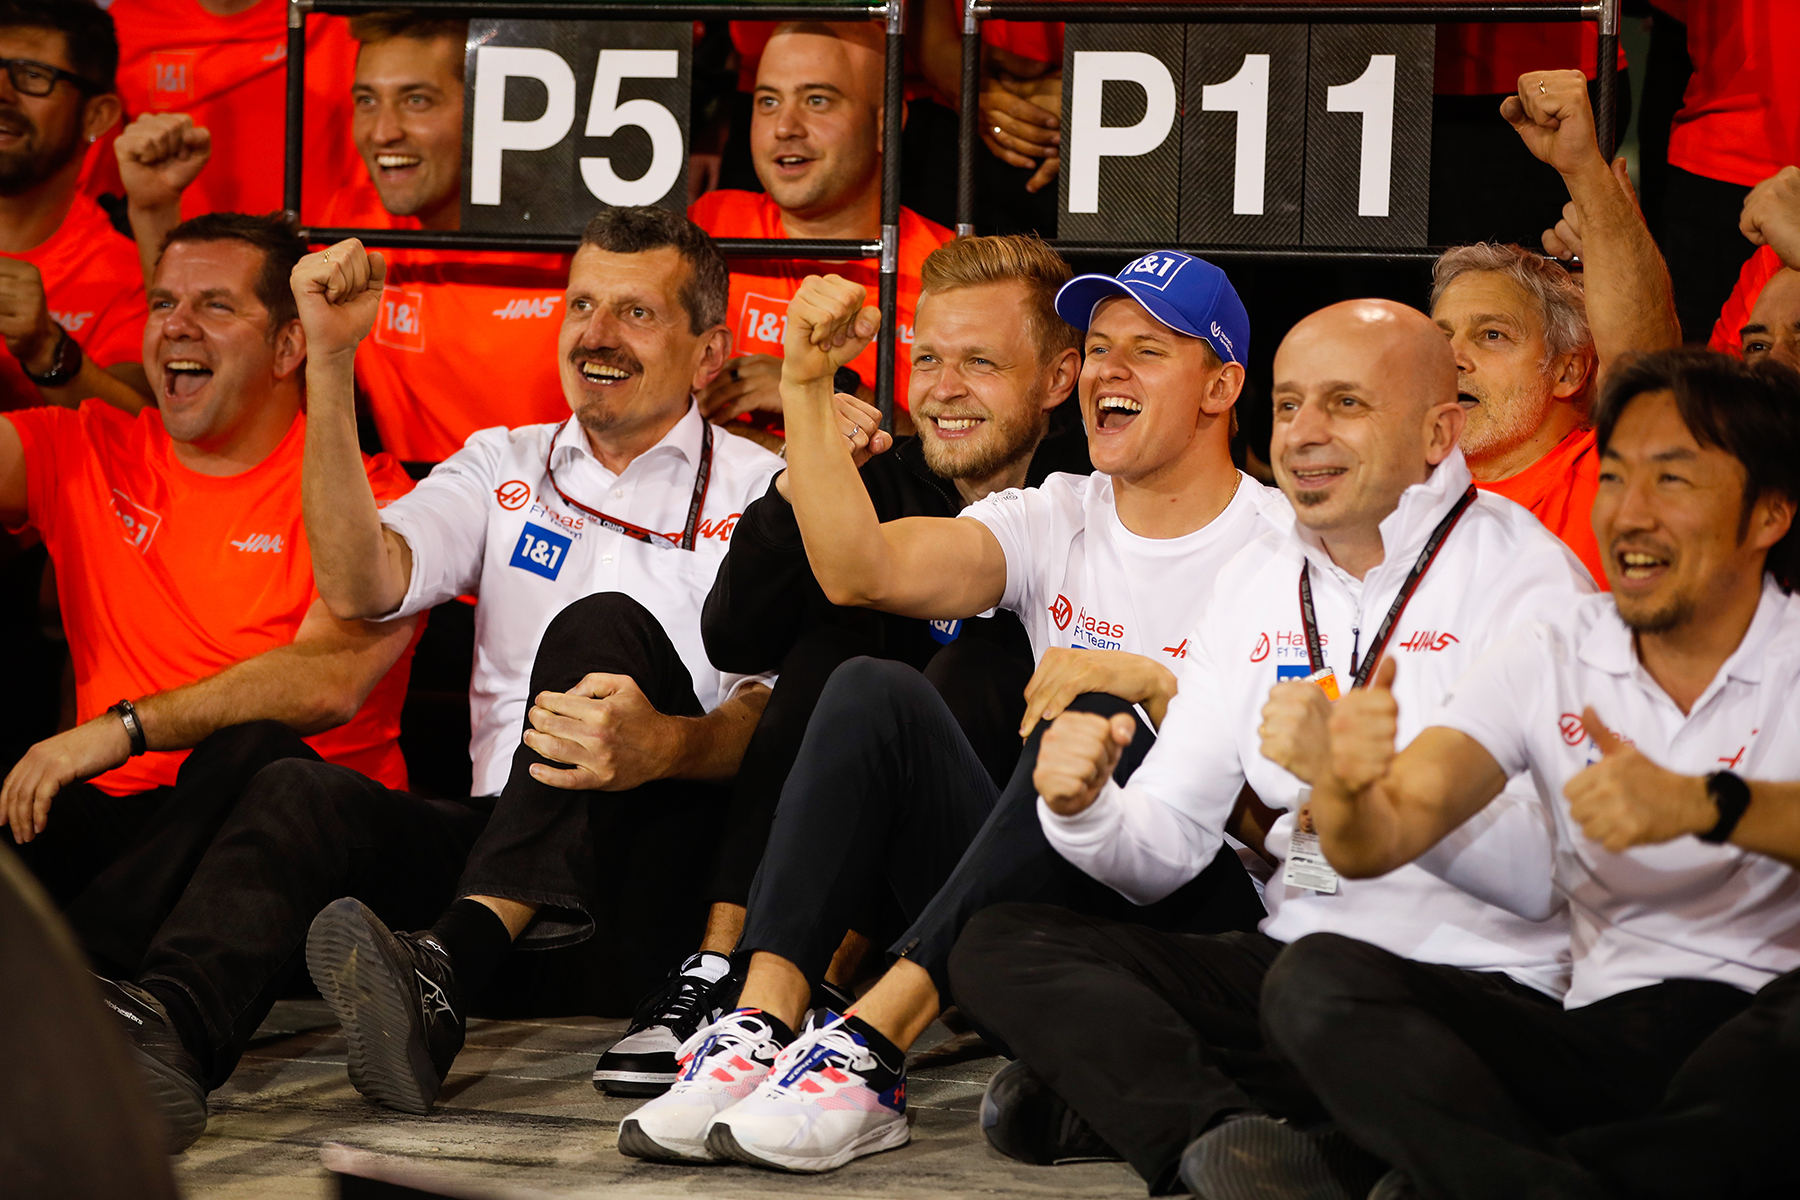 Nach Entschuldigung: Schumacher nimmt Podium ins Visier | F1-Insider.com